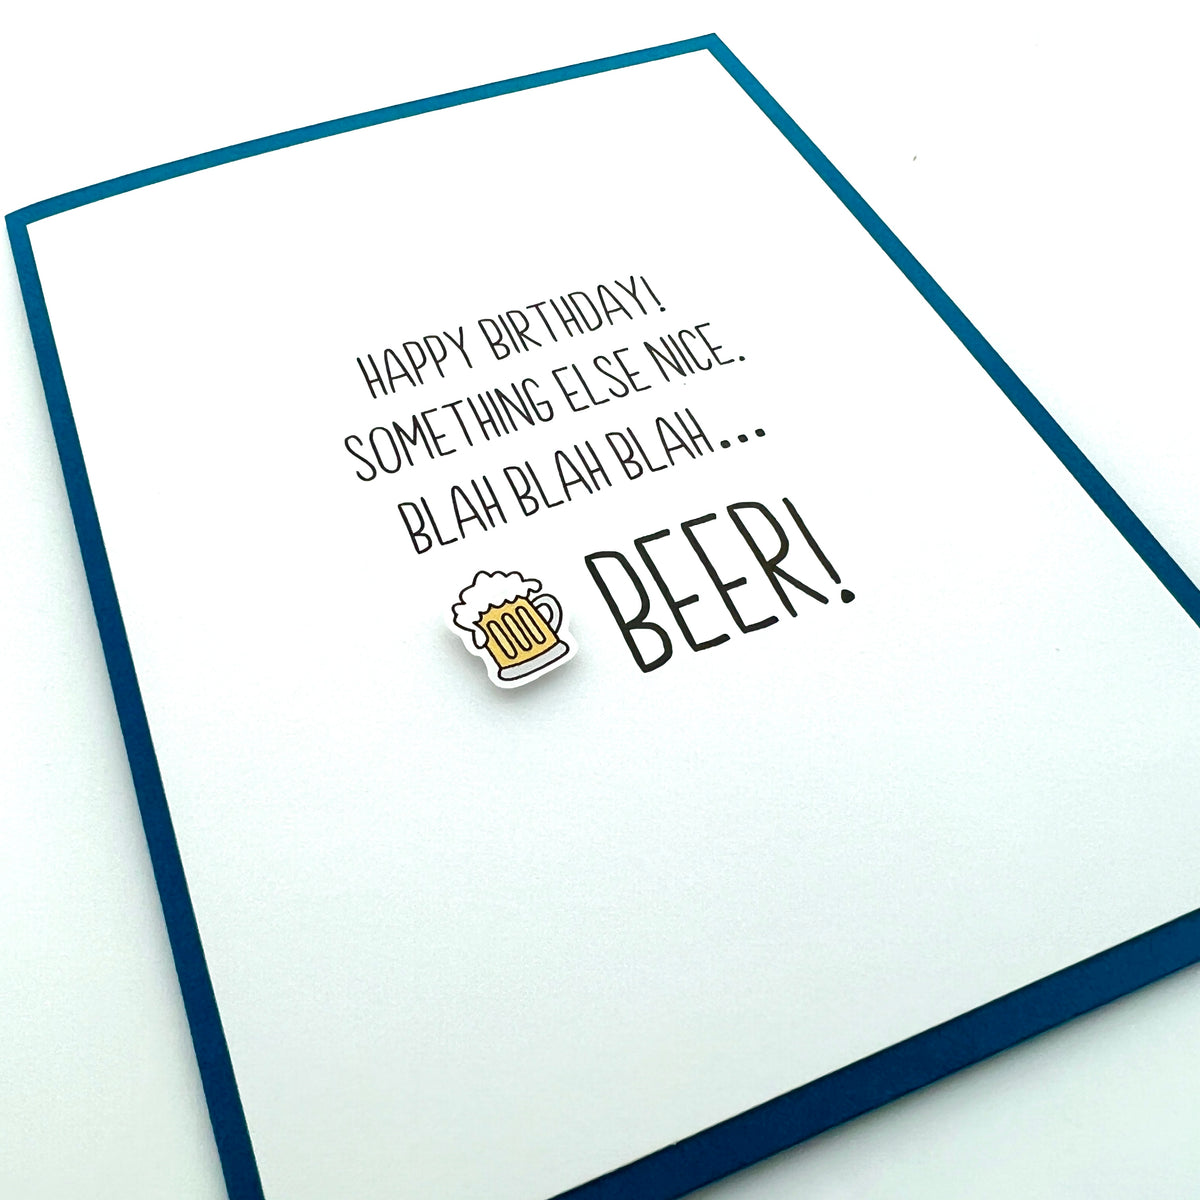 Birthday Blah Blah Beer funny card